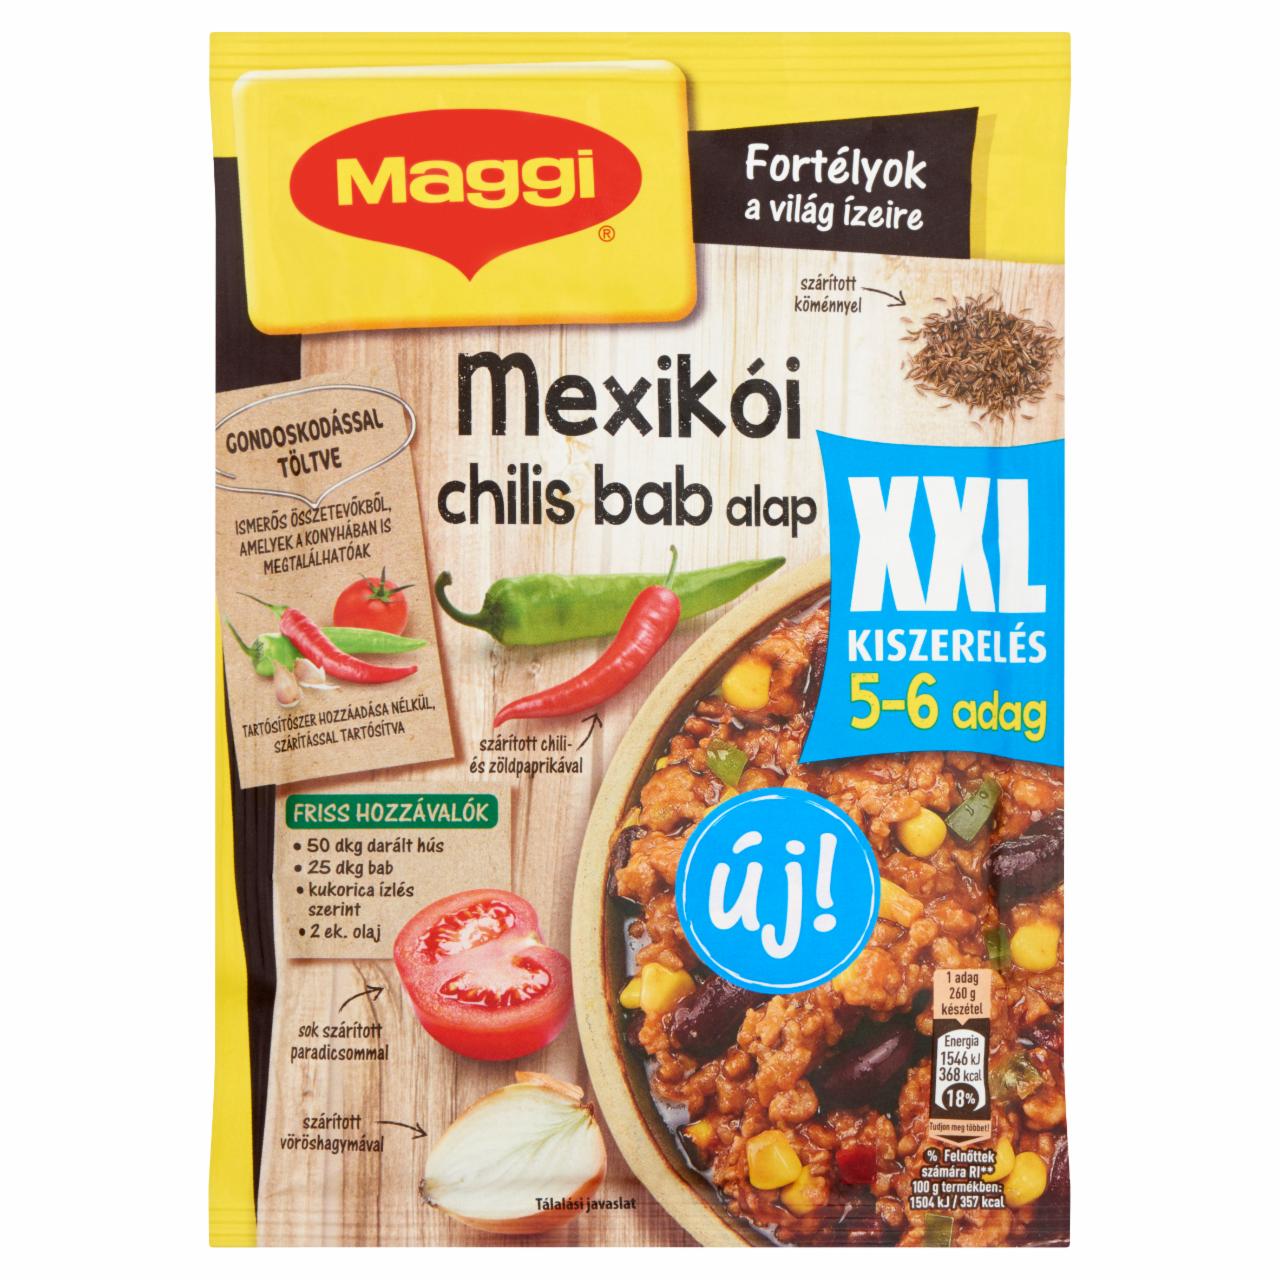 Képek - Maggi Fortélyok a világ ízeire XXL Mexikói chilis bab alap 55 g